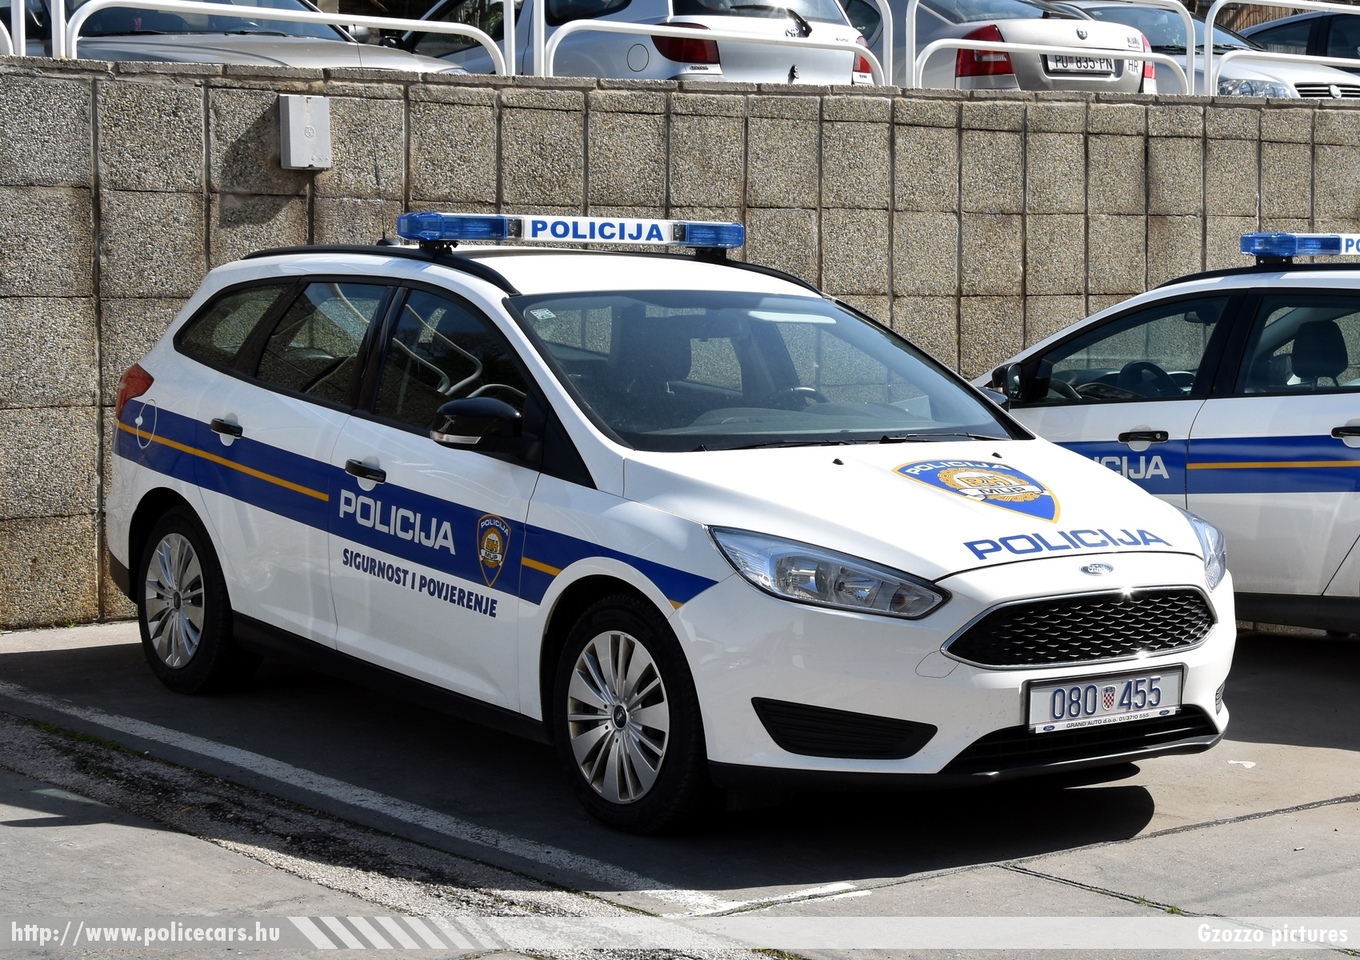 Ford Focus, fotó: Gzozzo pictures
Keywords: croatian rendőr rendőrautó rendőrség horvát Horvátország policecar police Croatia